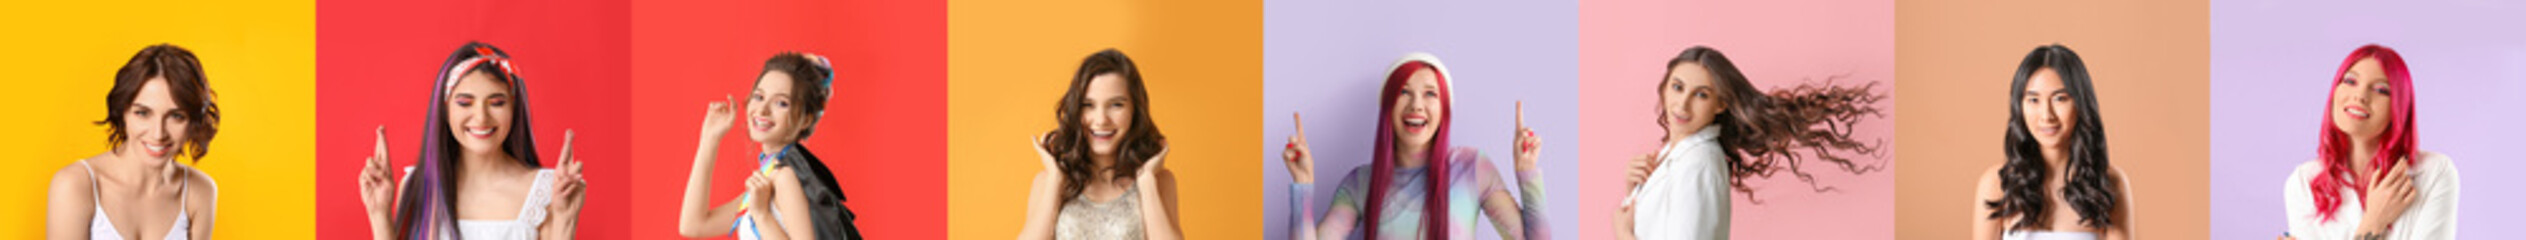 Set of beautiful women with stylish hairdo on colorful background